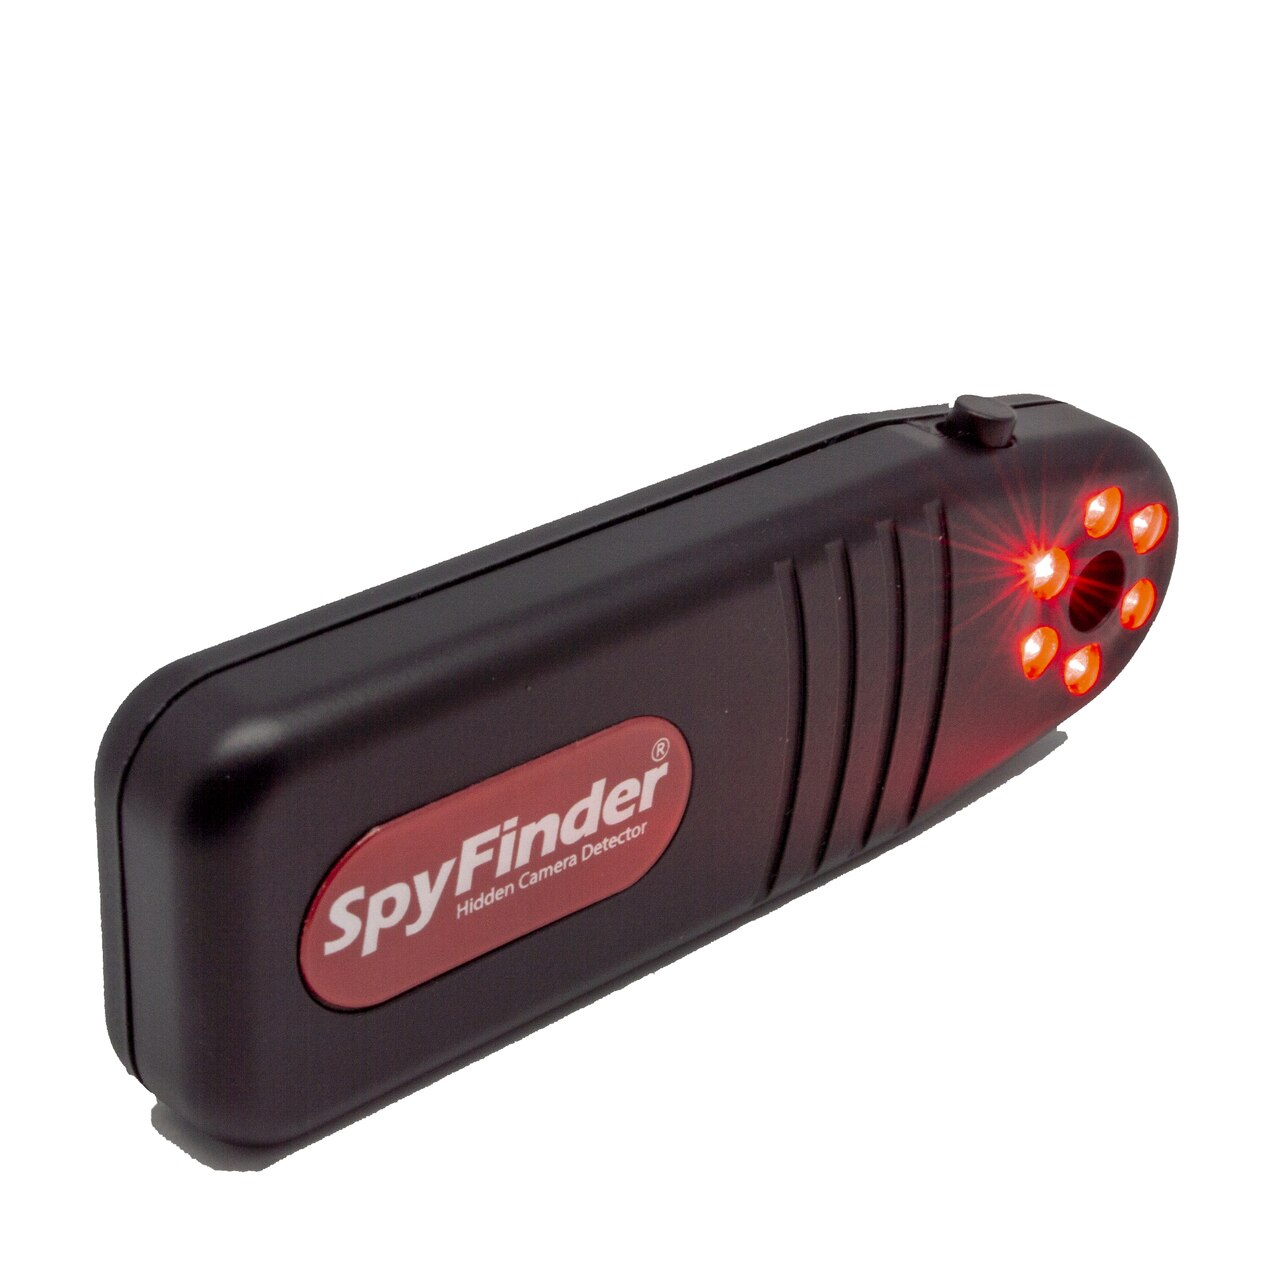 SpyFinder Pro, el detector de cámaras ocultas para descubrir quién te espía